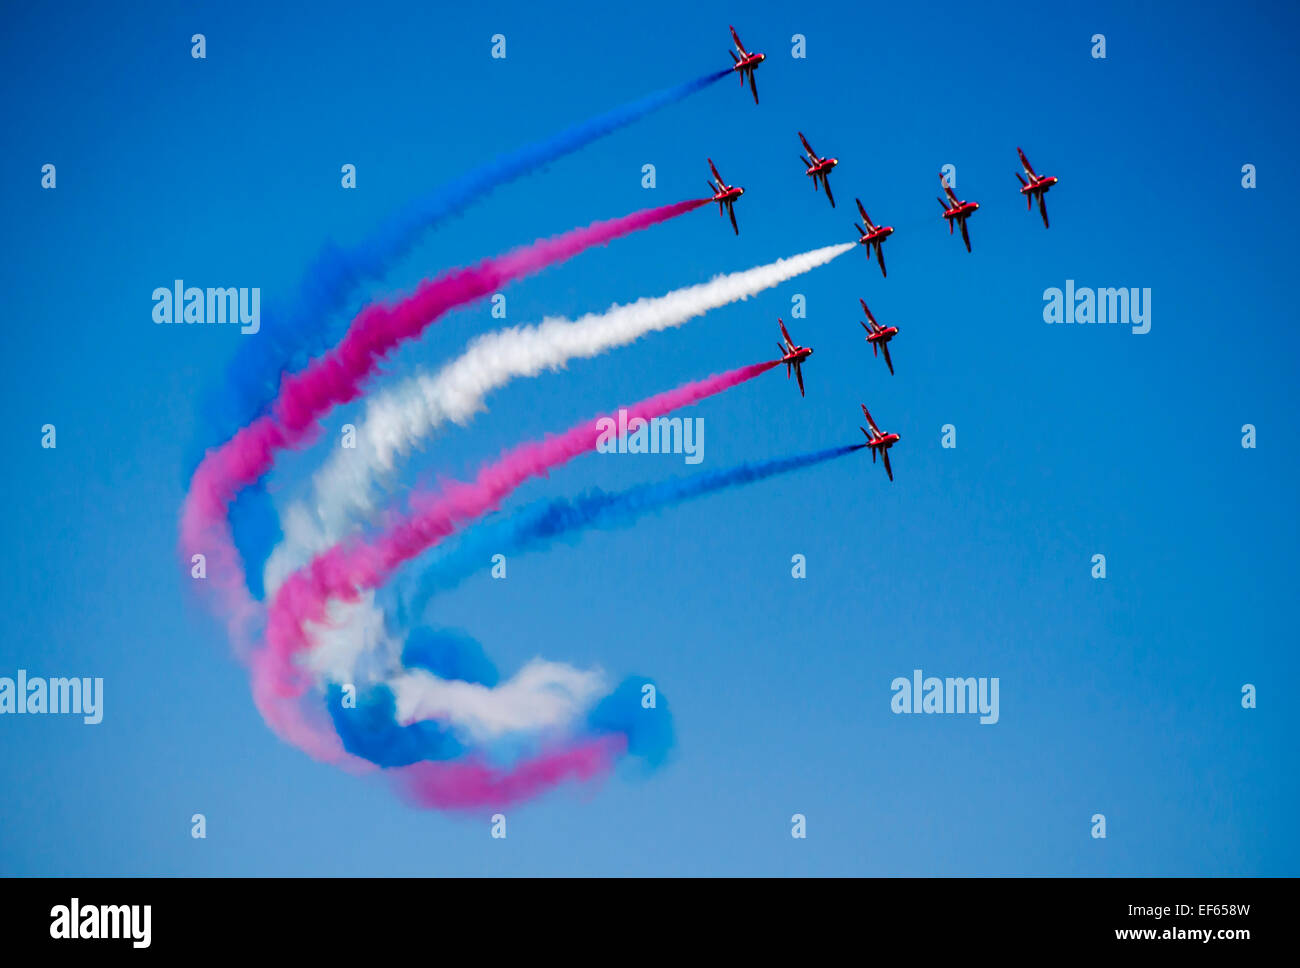 Kunstflugstaffel der Royal Air Force, die roten Pfeile Stockfoto